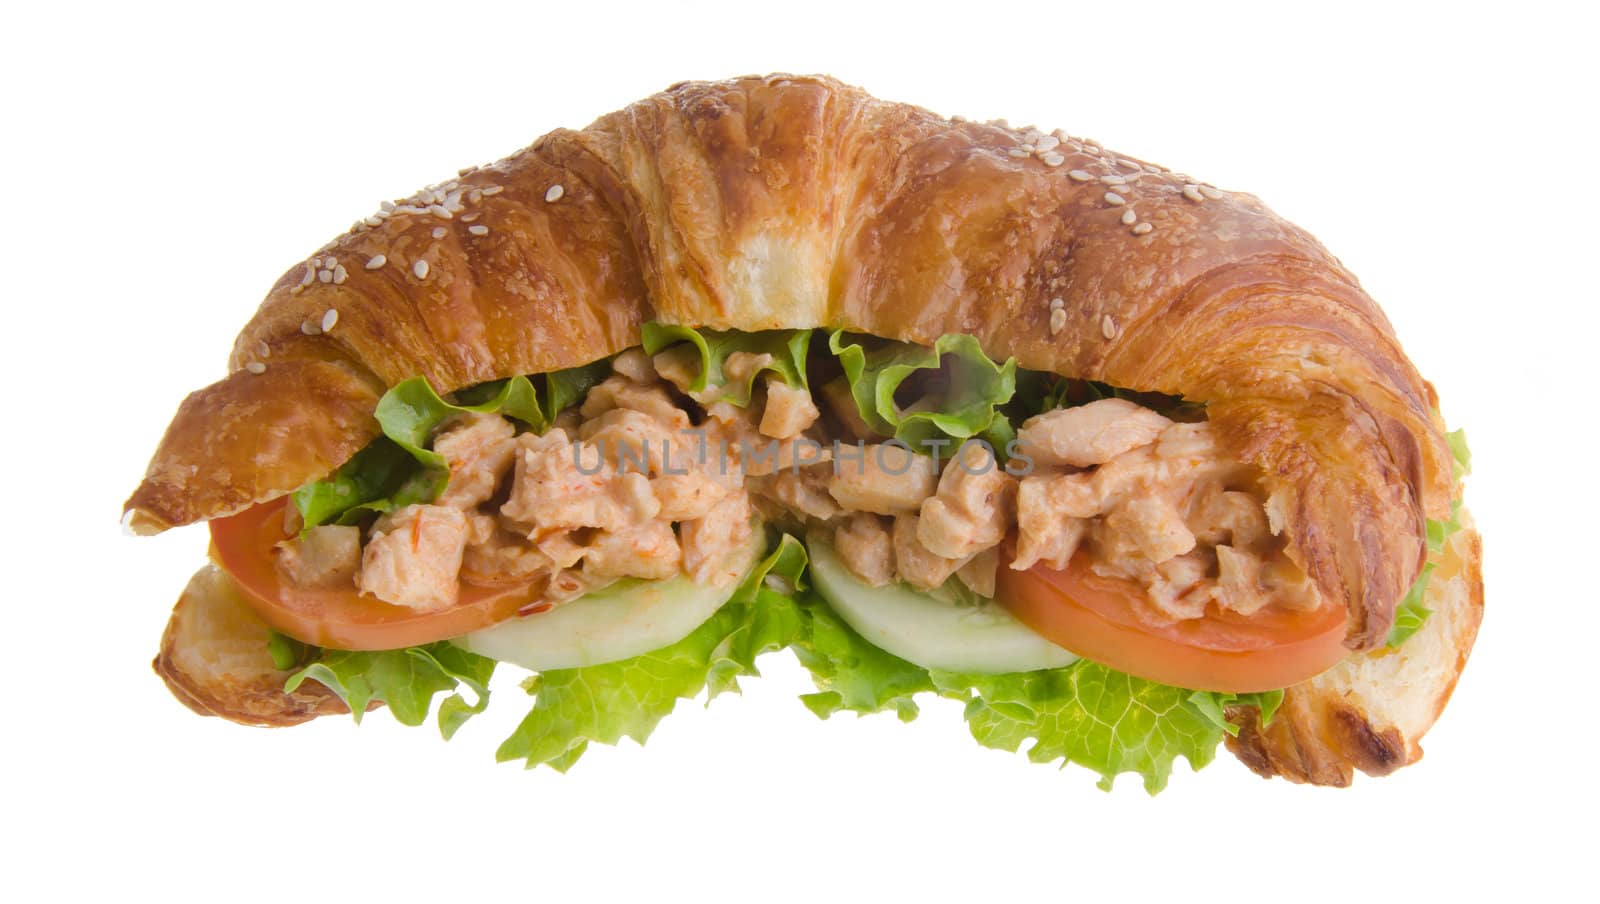 sandwich, croissant sandwich, fast food for breakfast or lunch. by heinteh